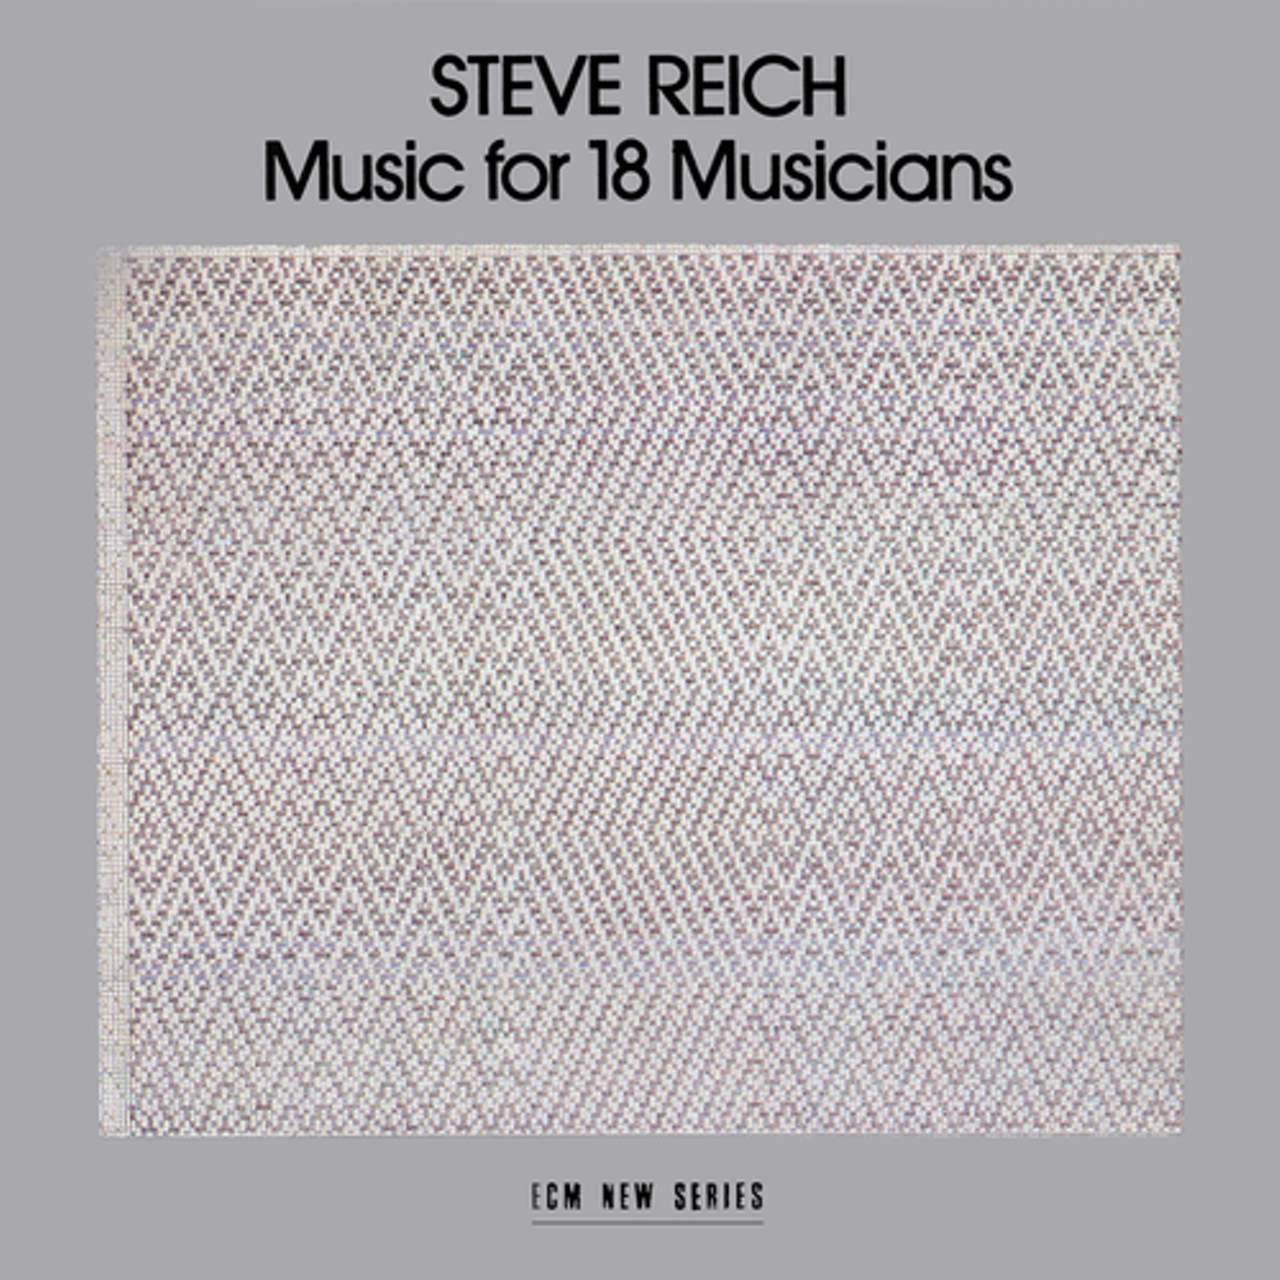 Steve Reich &#150; Music for 18 Musicians
Listen for focus!
